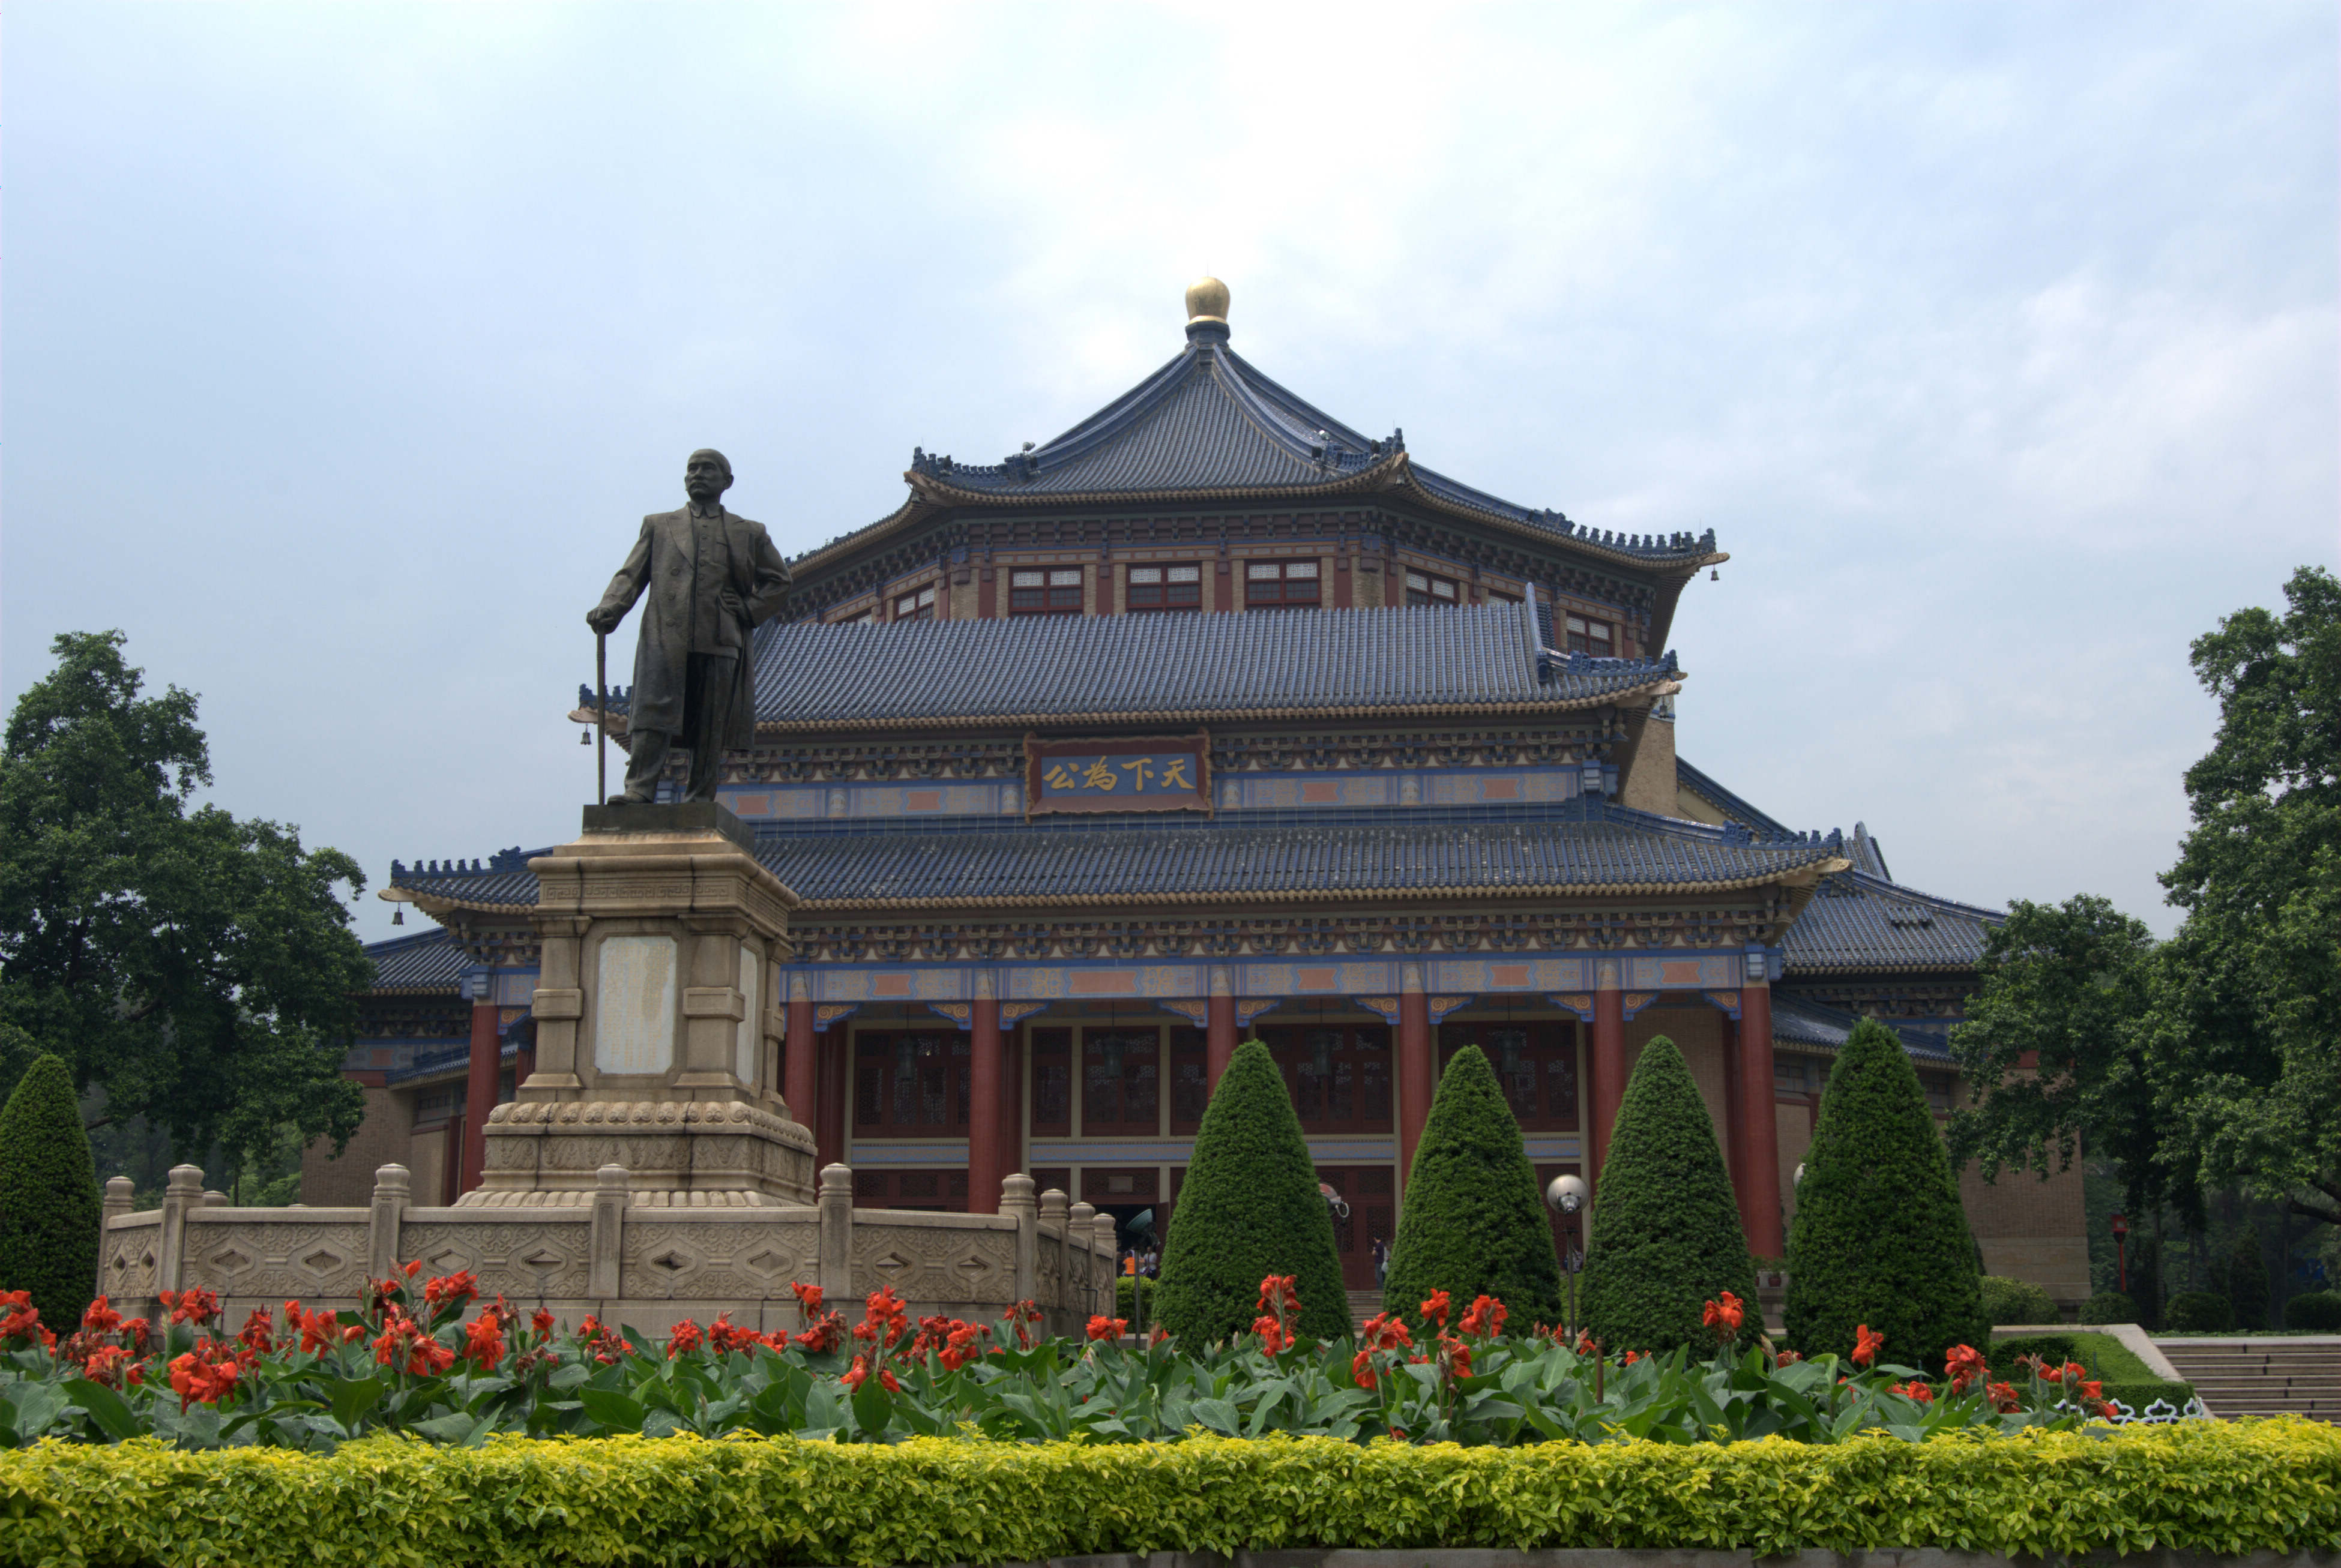 中山纪念堂 - 中国旅游资讯网365135.COM